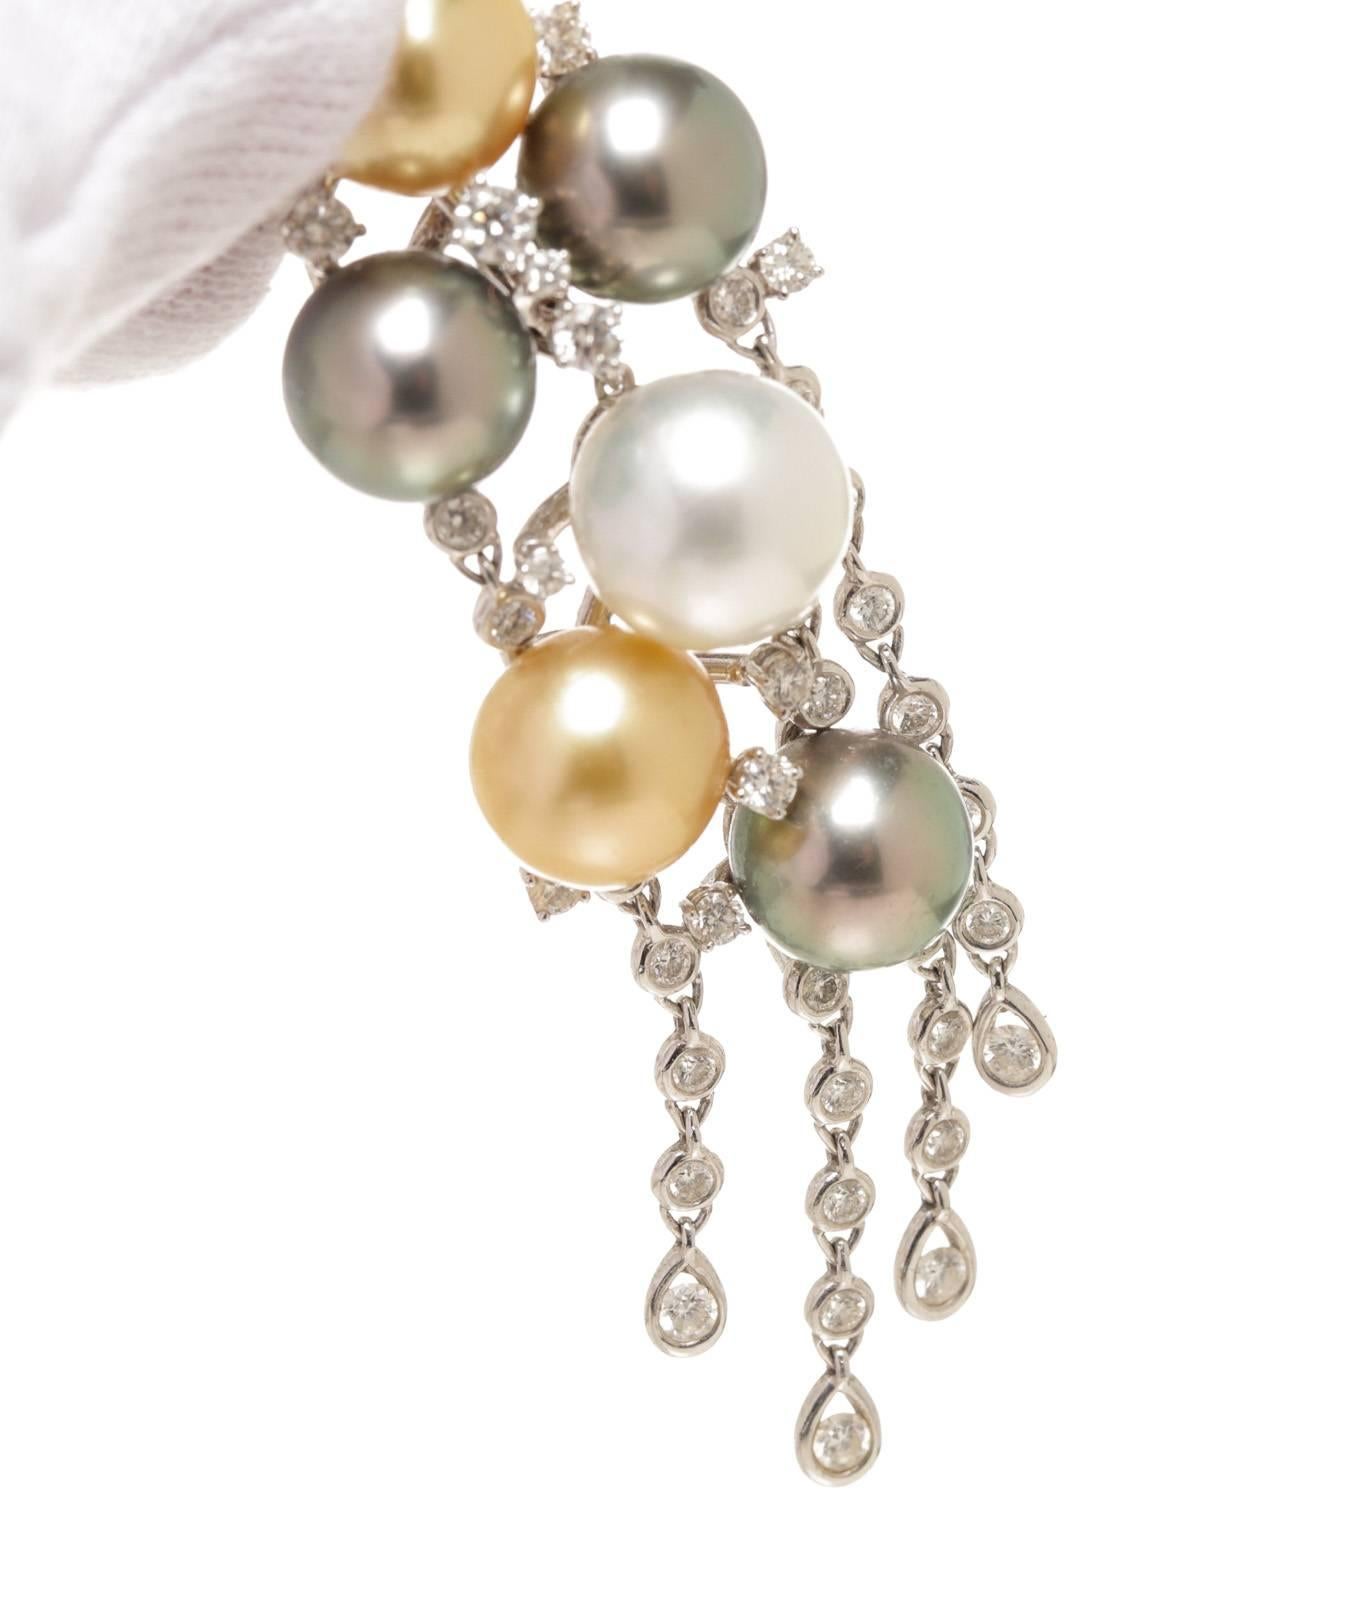 Pearl Gold Pendant In Good Condition For Sale In Corona Del Mar, CA